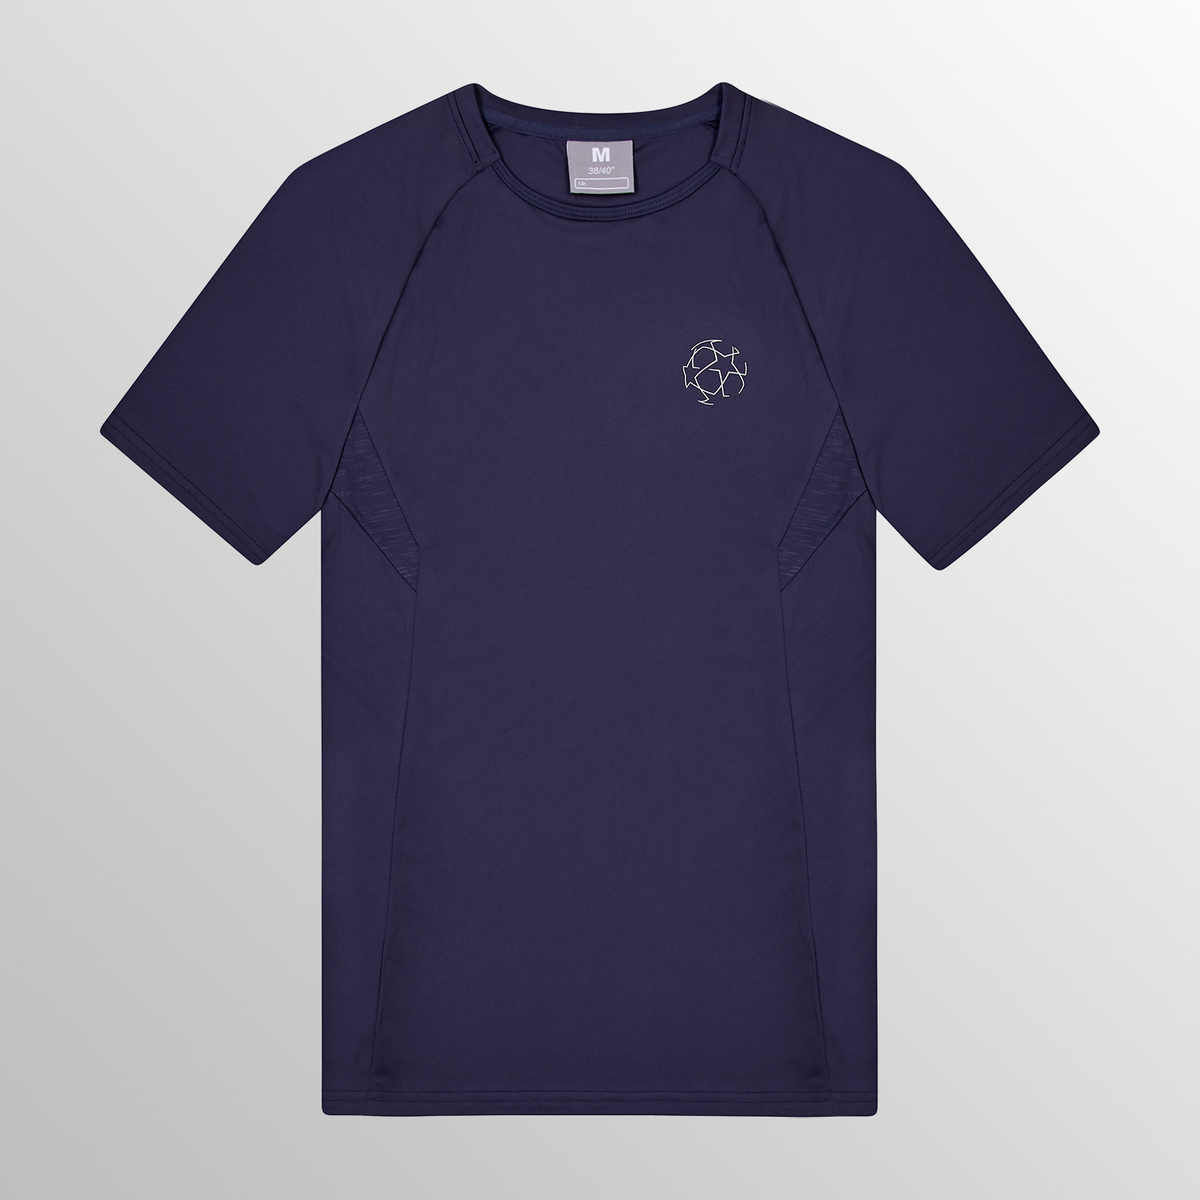 UEFA Champions League – Premium Eco Tech T-Shirt